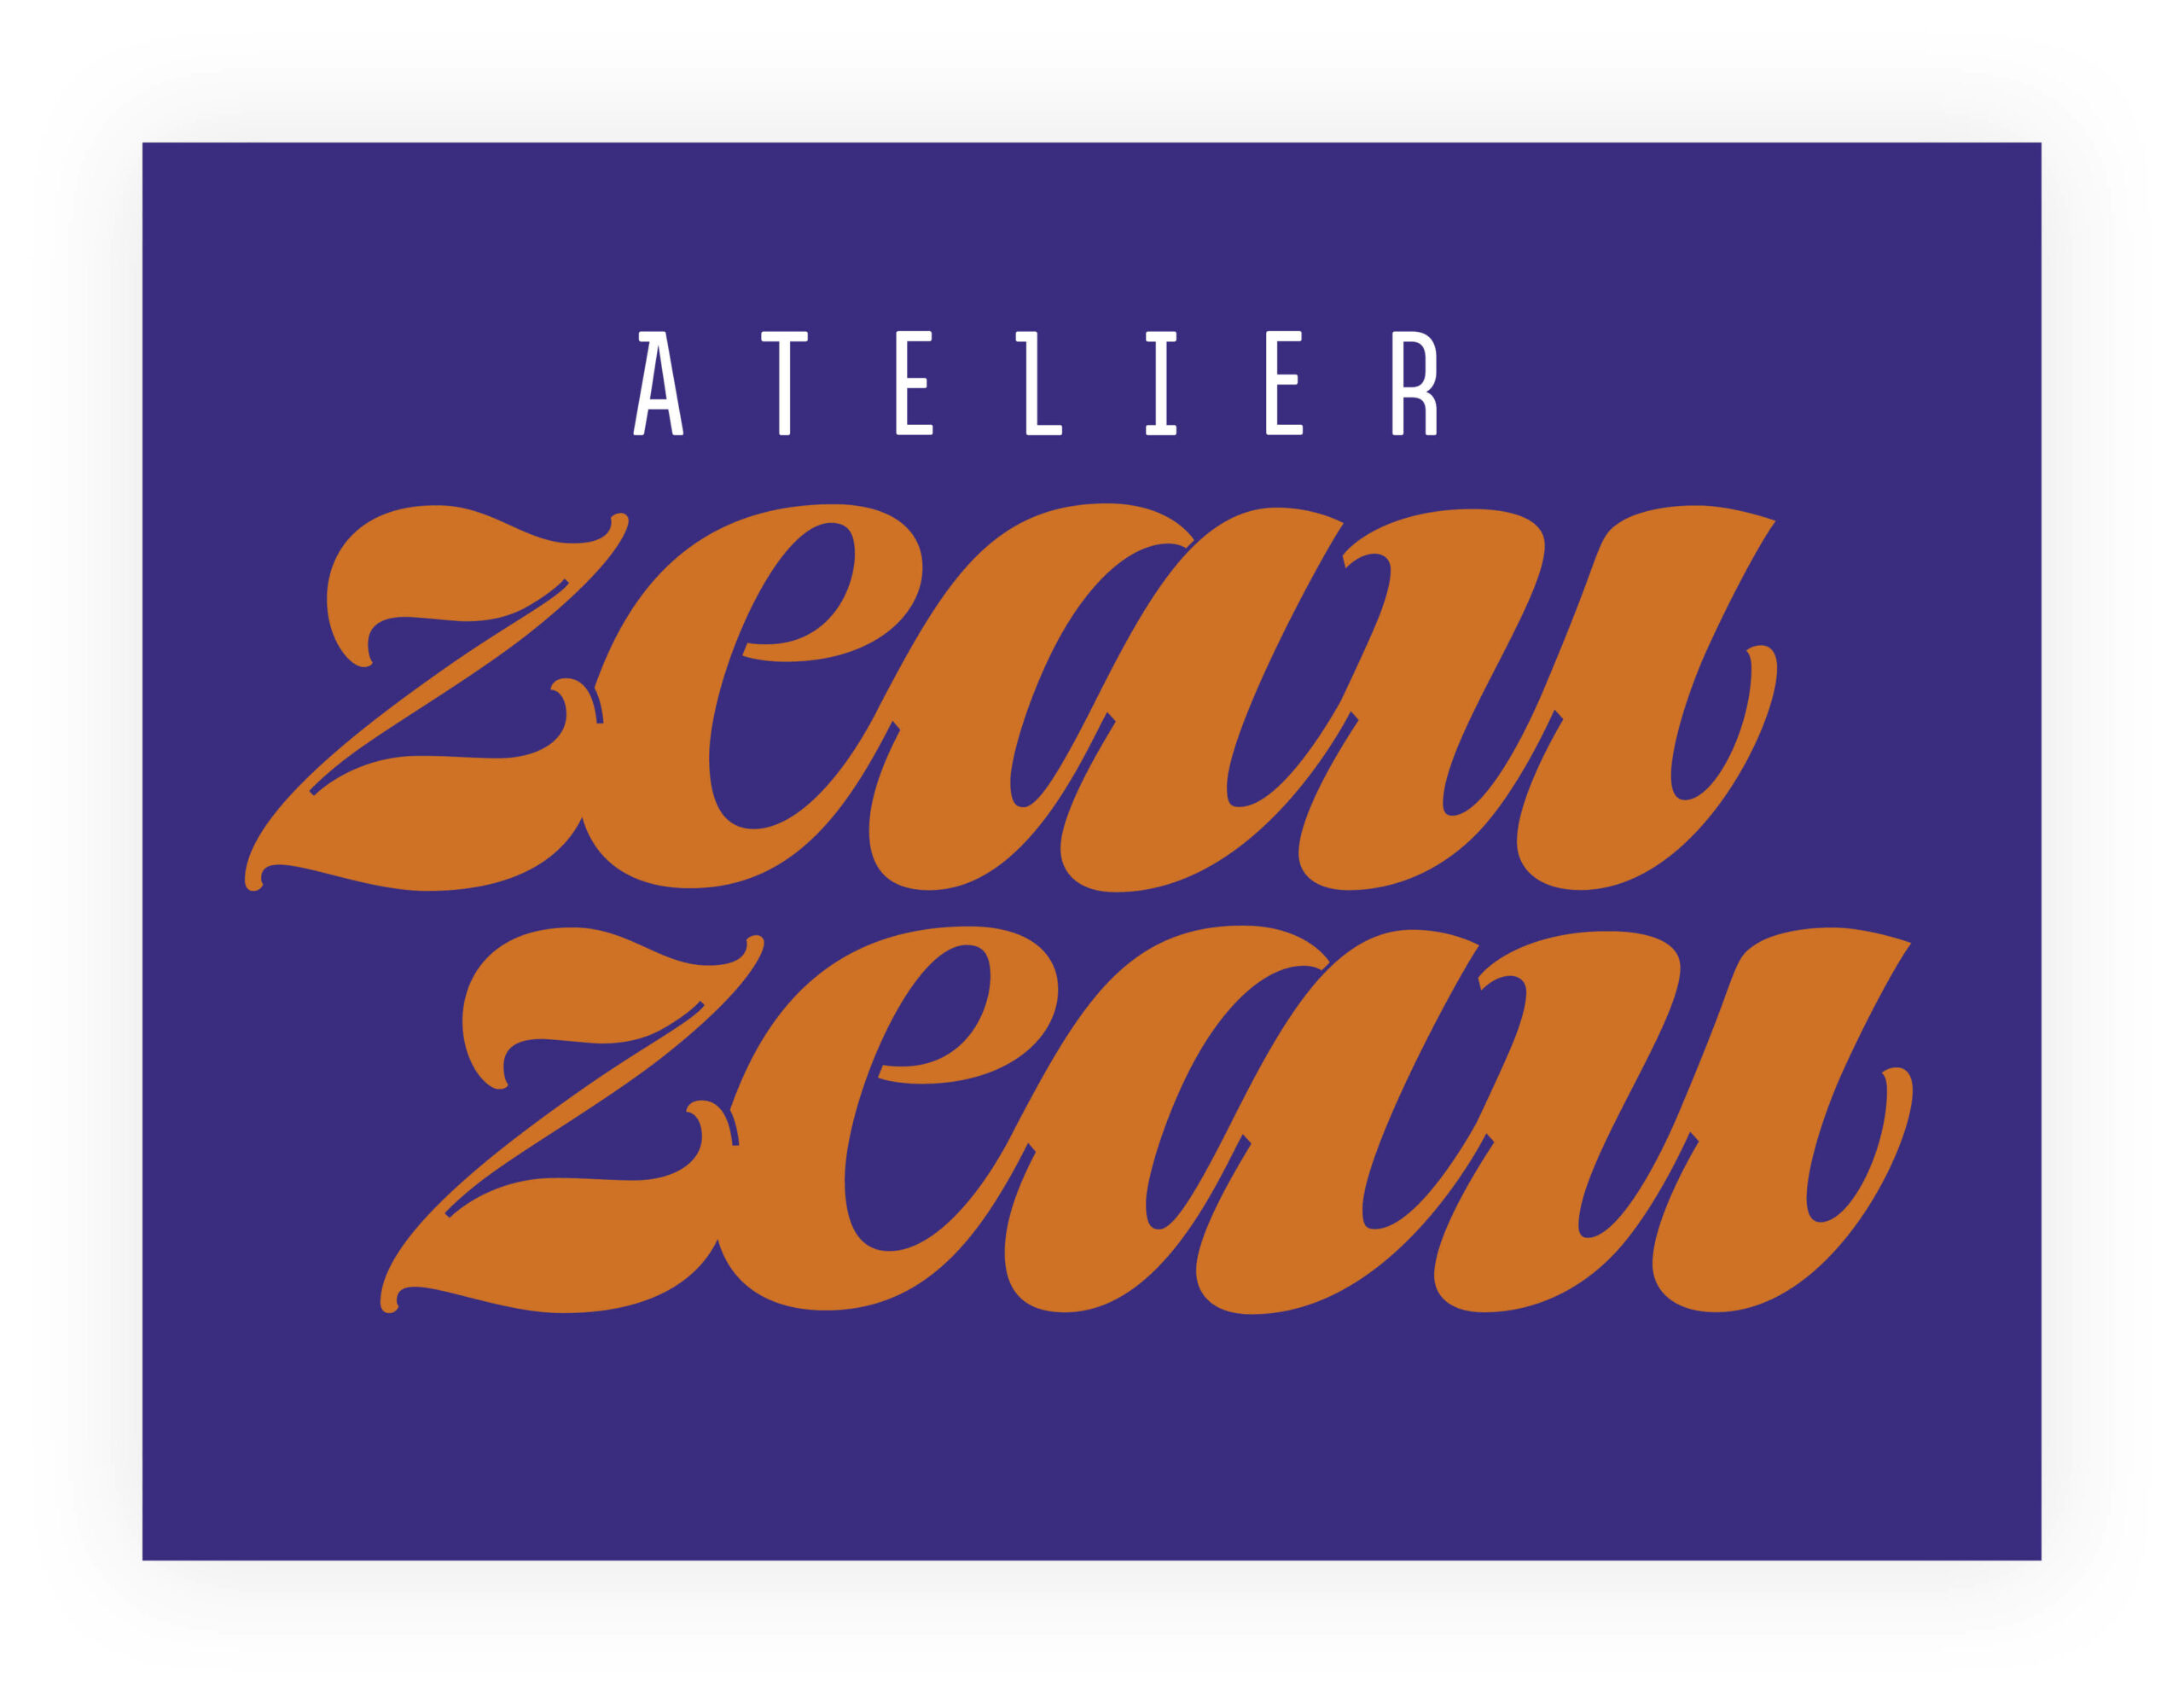 "Atelier Zeau Zeau" digital lettering in orange on purple background by Elmo van Slingerland